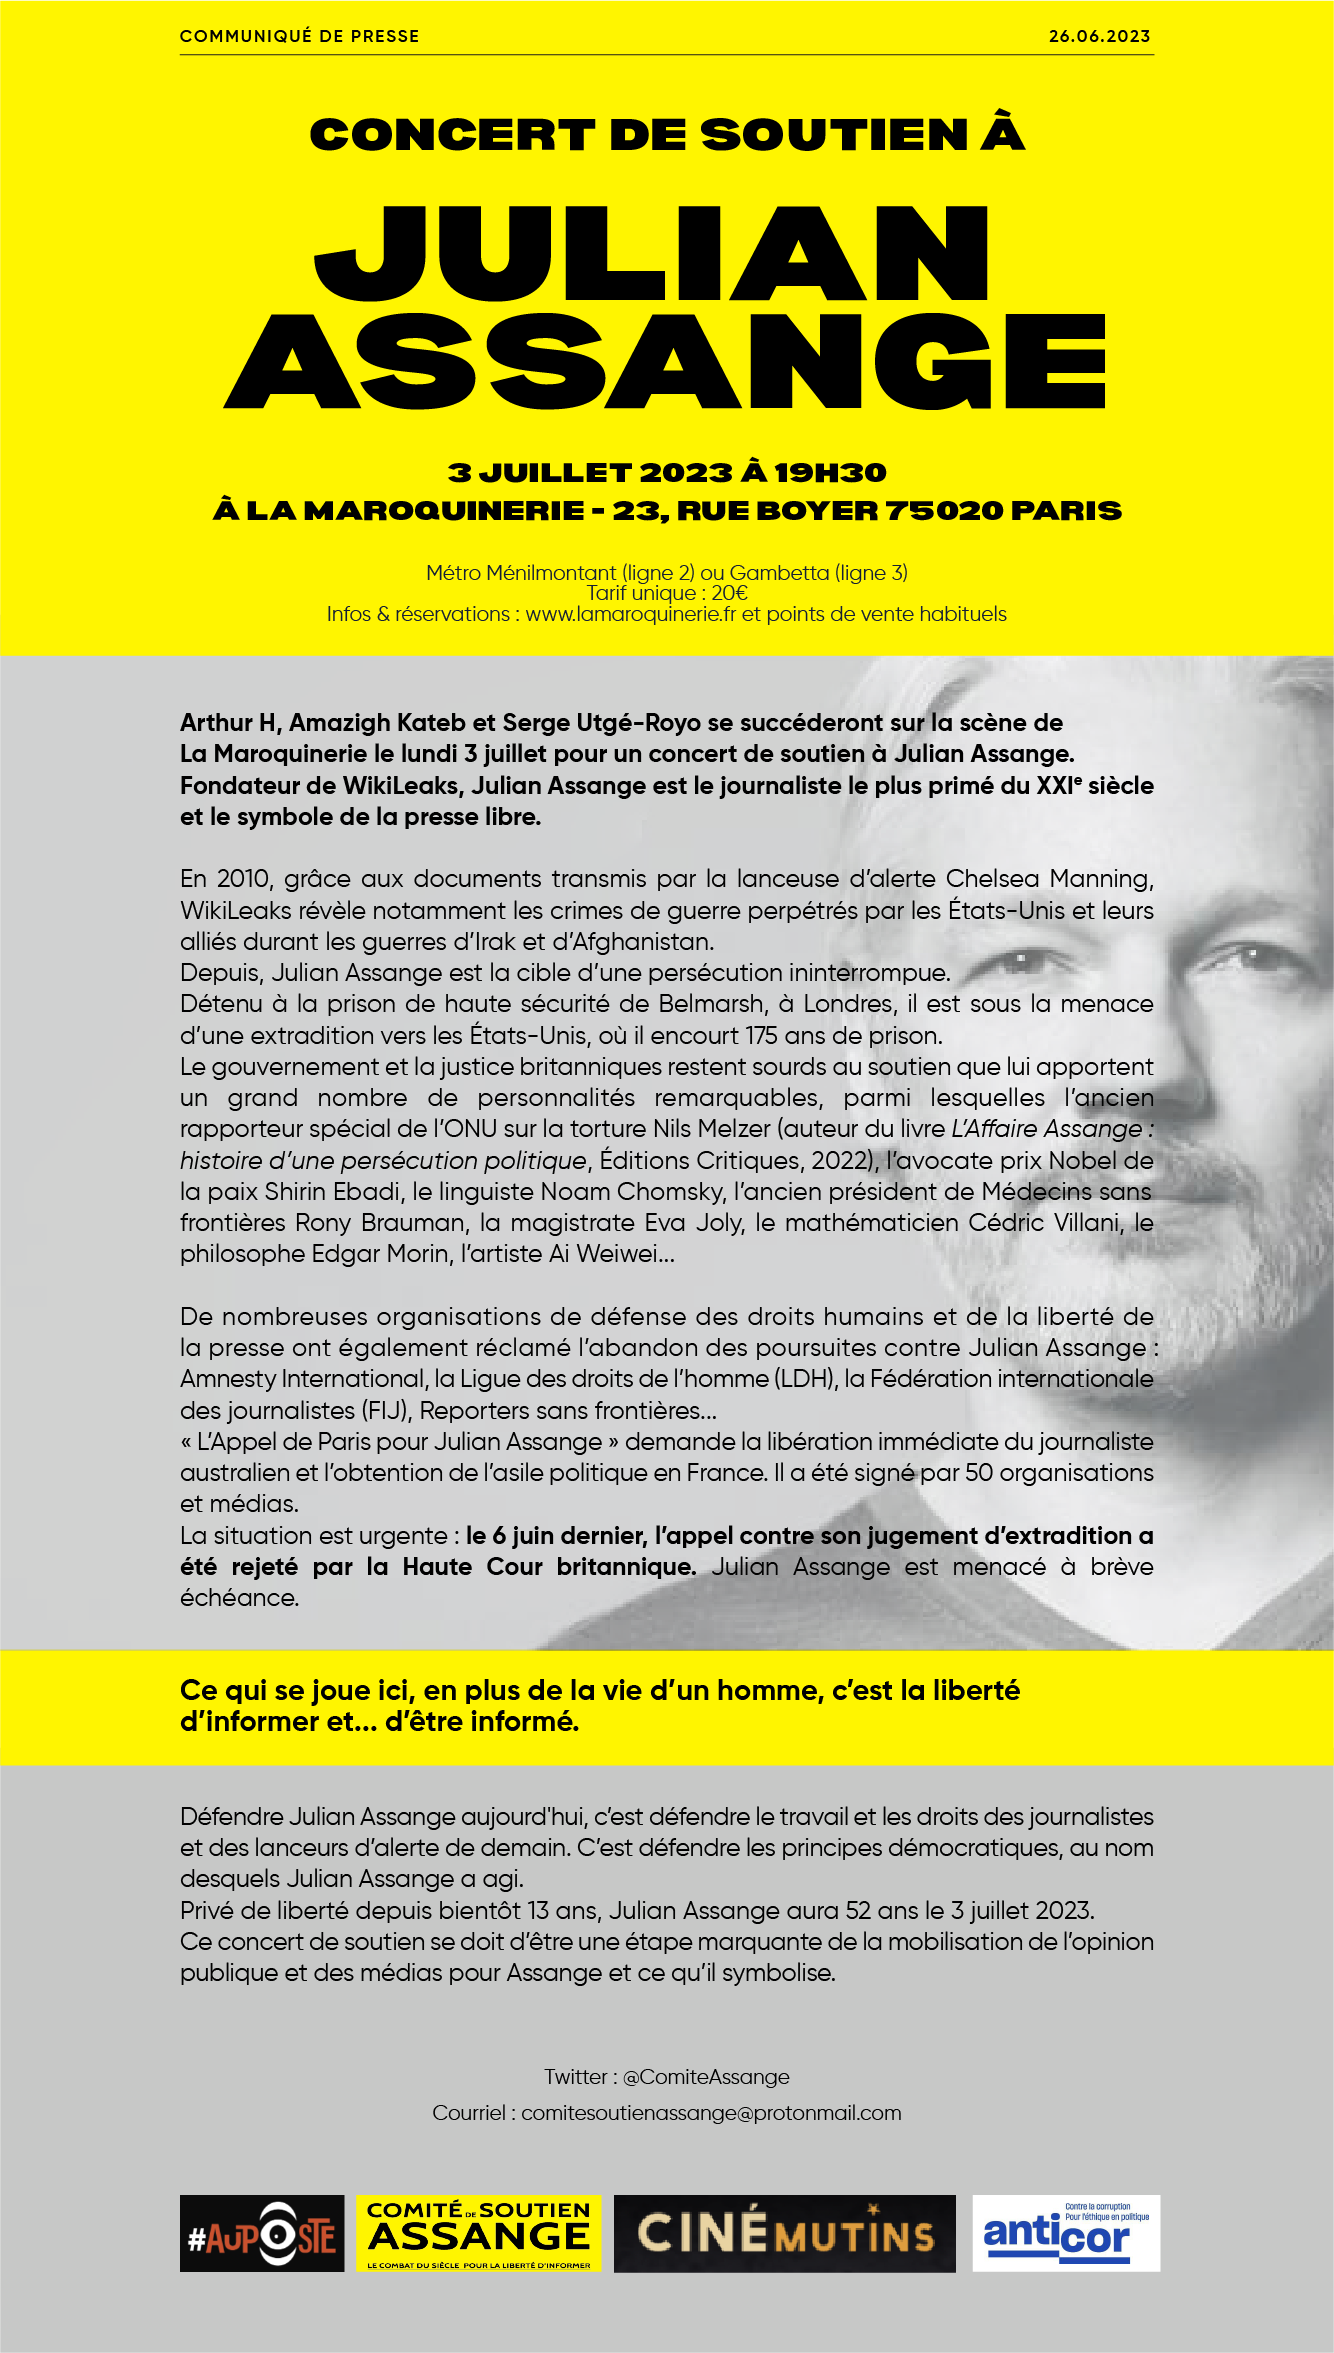 Communiqué concert de soutien Assange 3 juillet